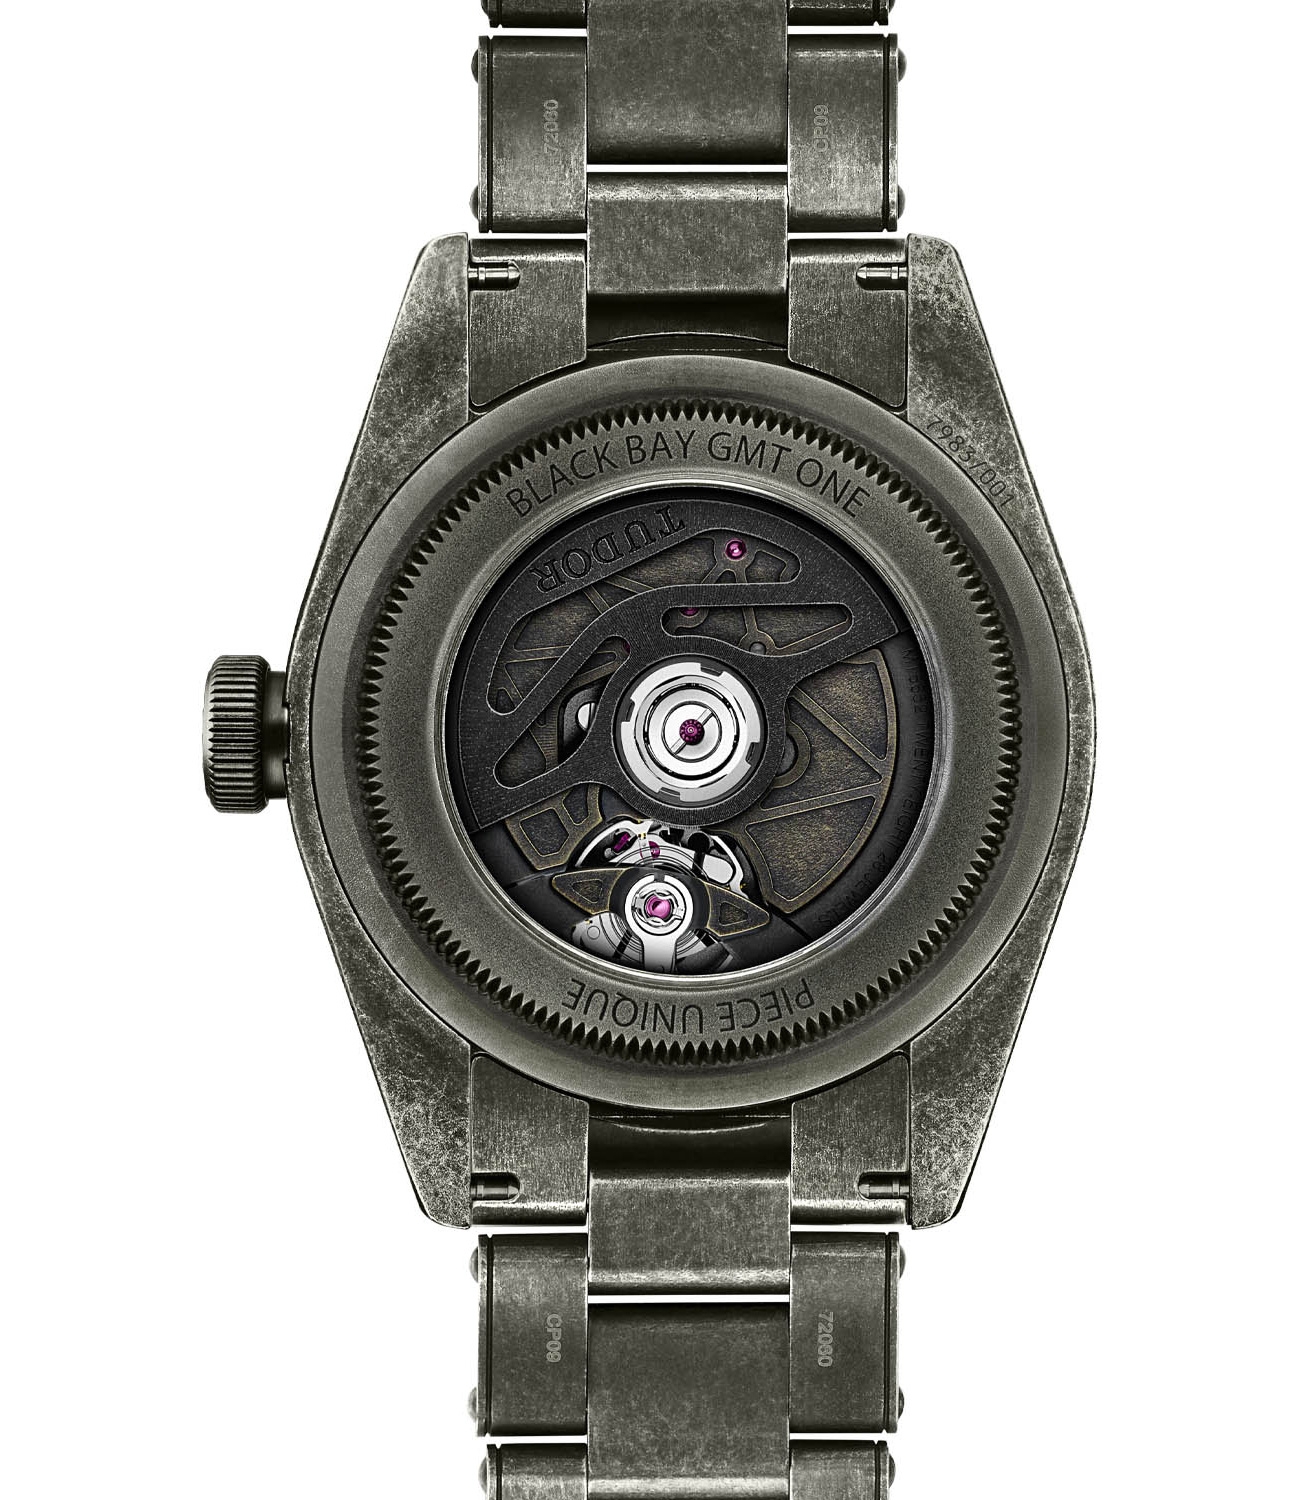 Часы Tudor Black Bay GMT One Master Chronometer